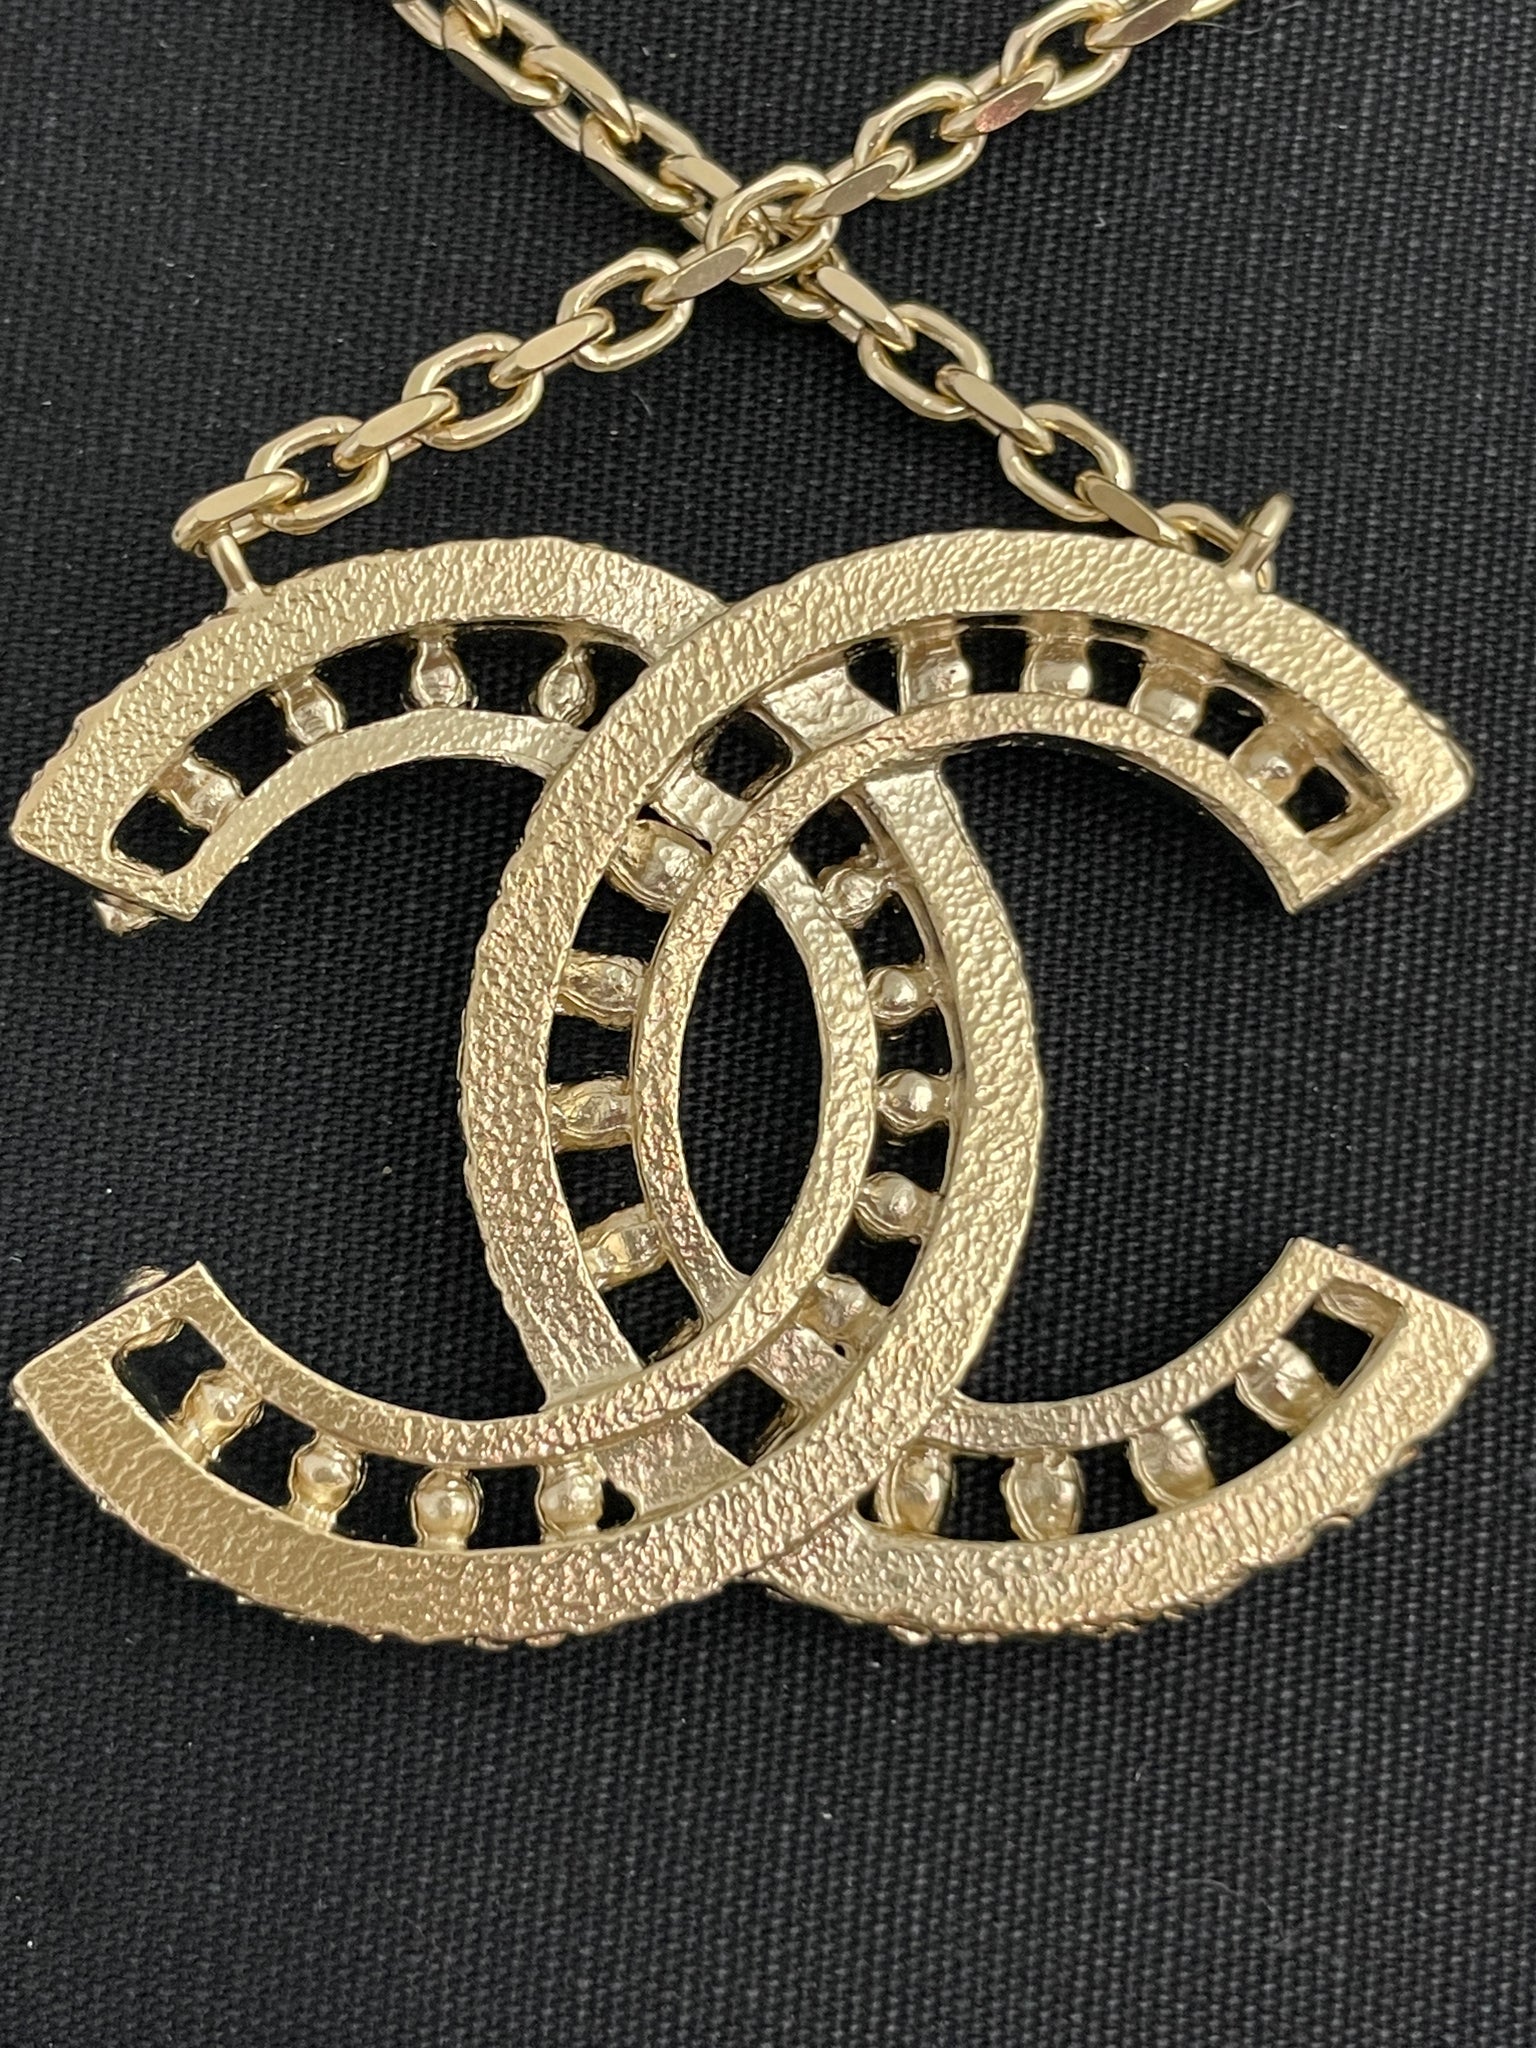 Chanel crystal chain cc - Gem